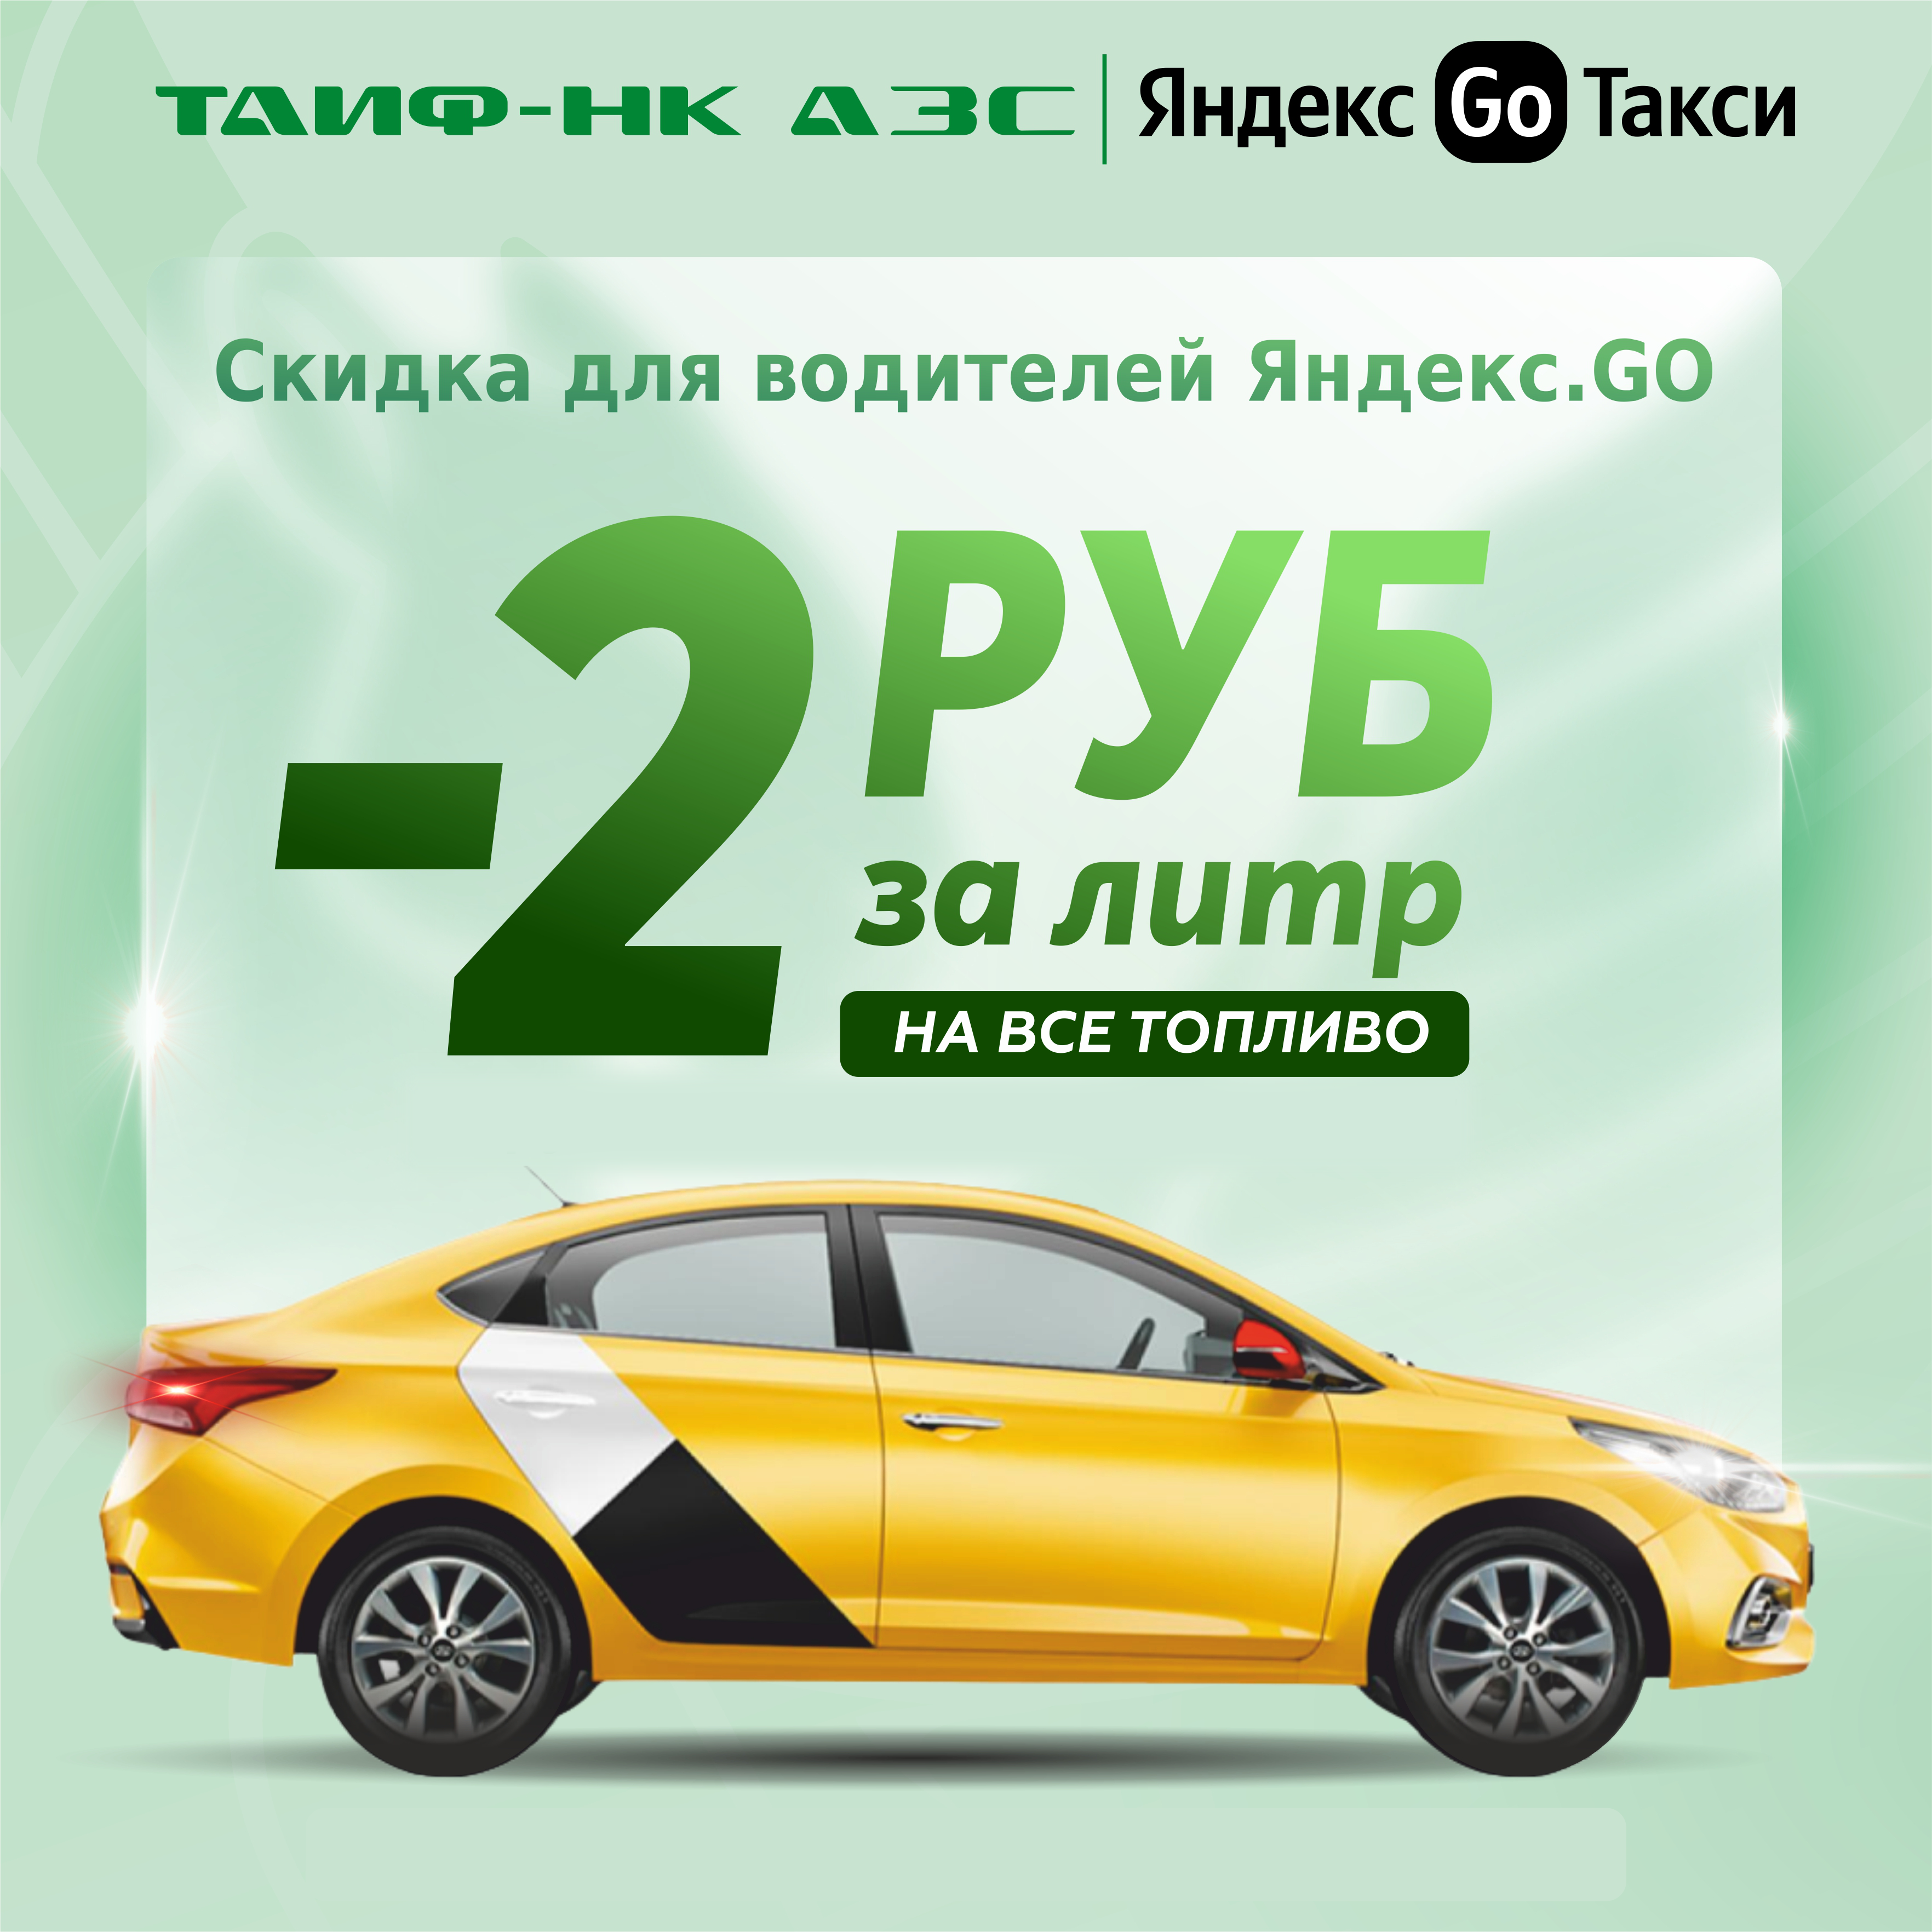 Апрельские скидки для водителей "Яндекс.GO"!